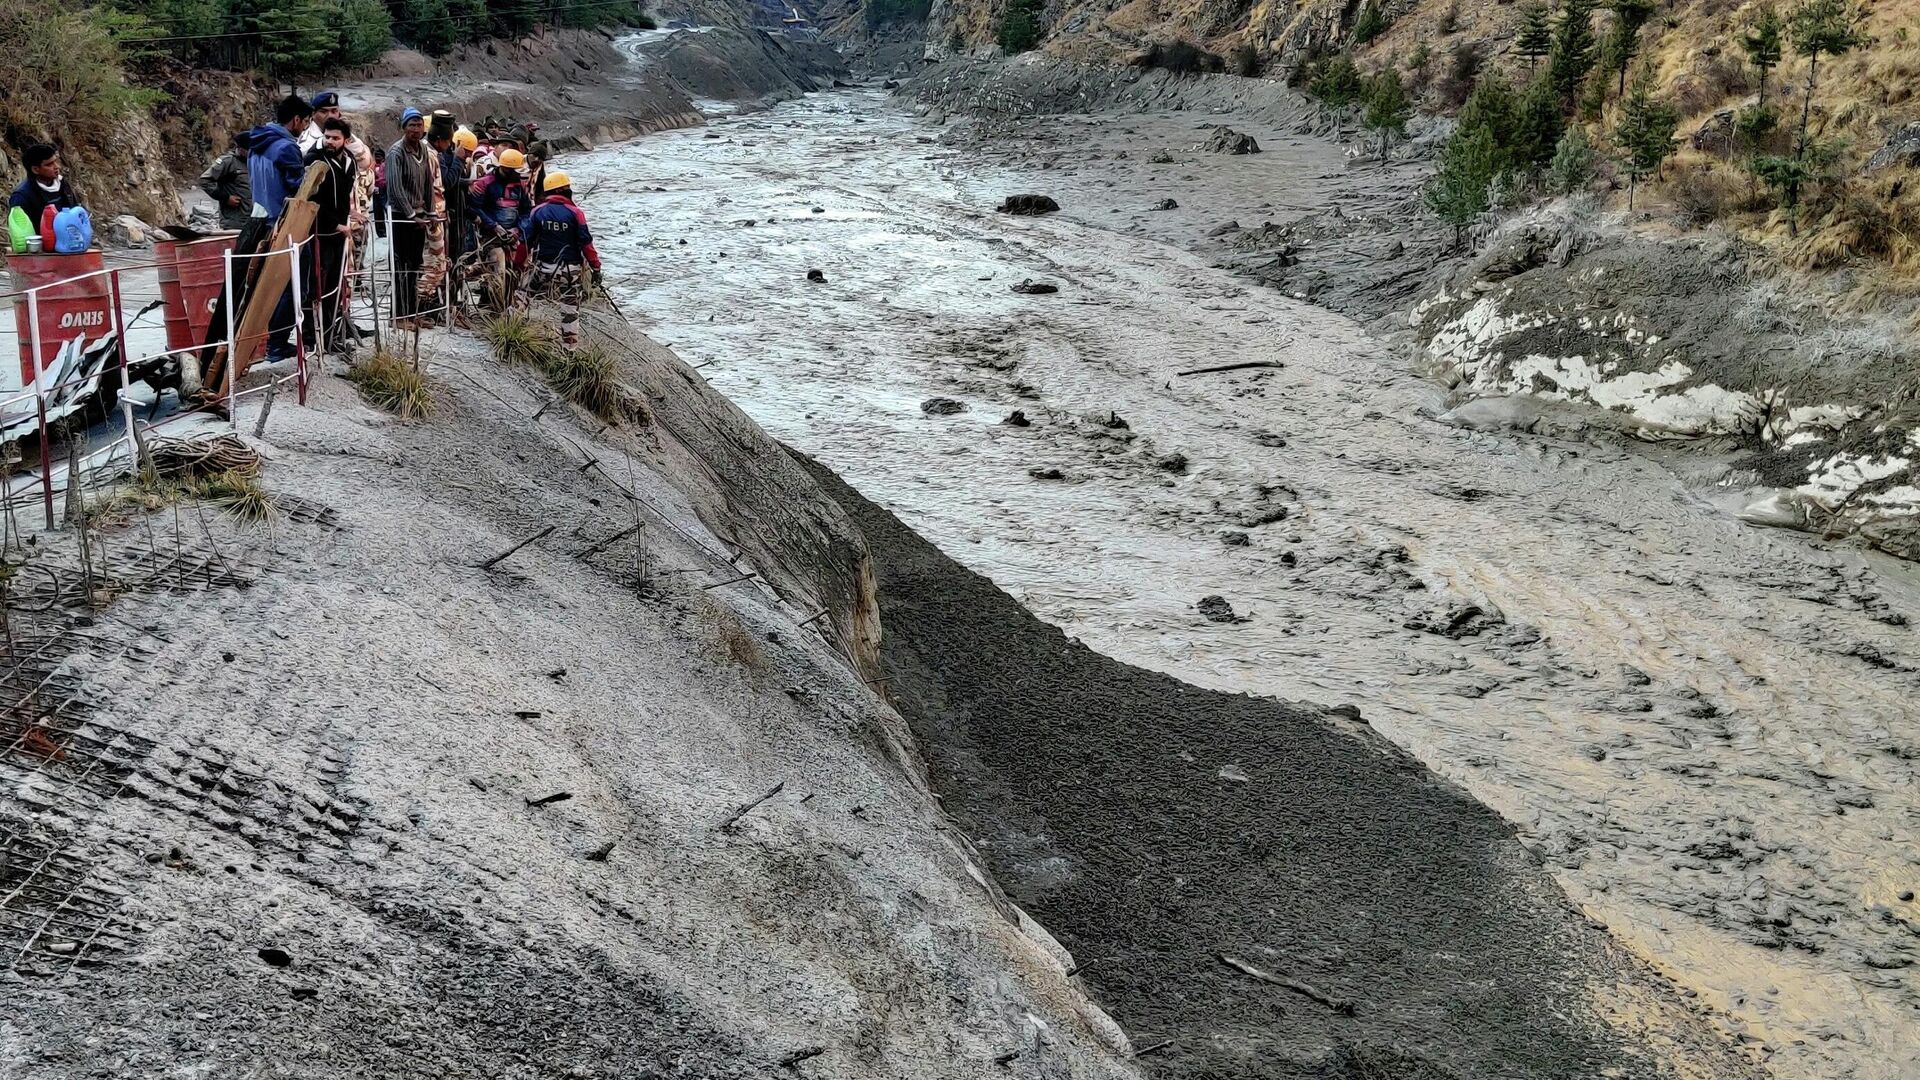 Индо-тибетская пограничная полиция занимается спасением людей после схода ледника в районе строящейся электростанции в штате Уттаракханд, Индия - РИА Новости, 1920, 19.02.2021